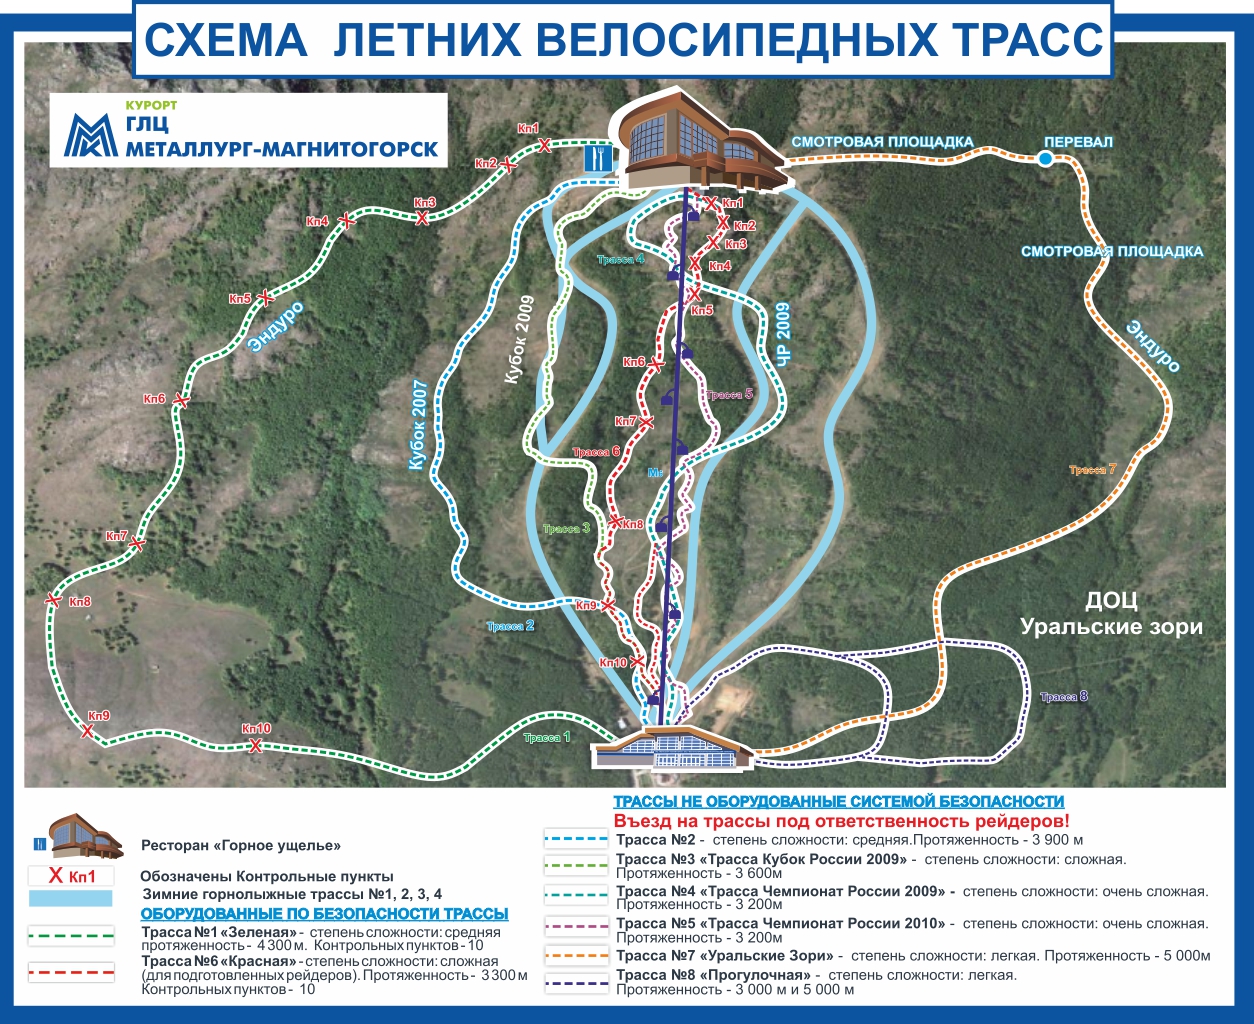 Схема летних велосипедных трасс на ГЛЦ Металлург-Магнитогорск